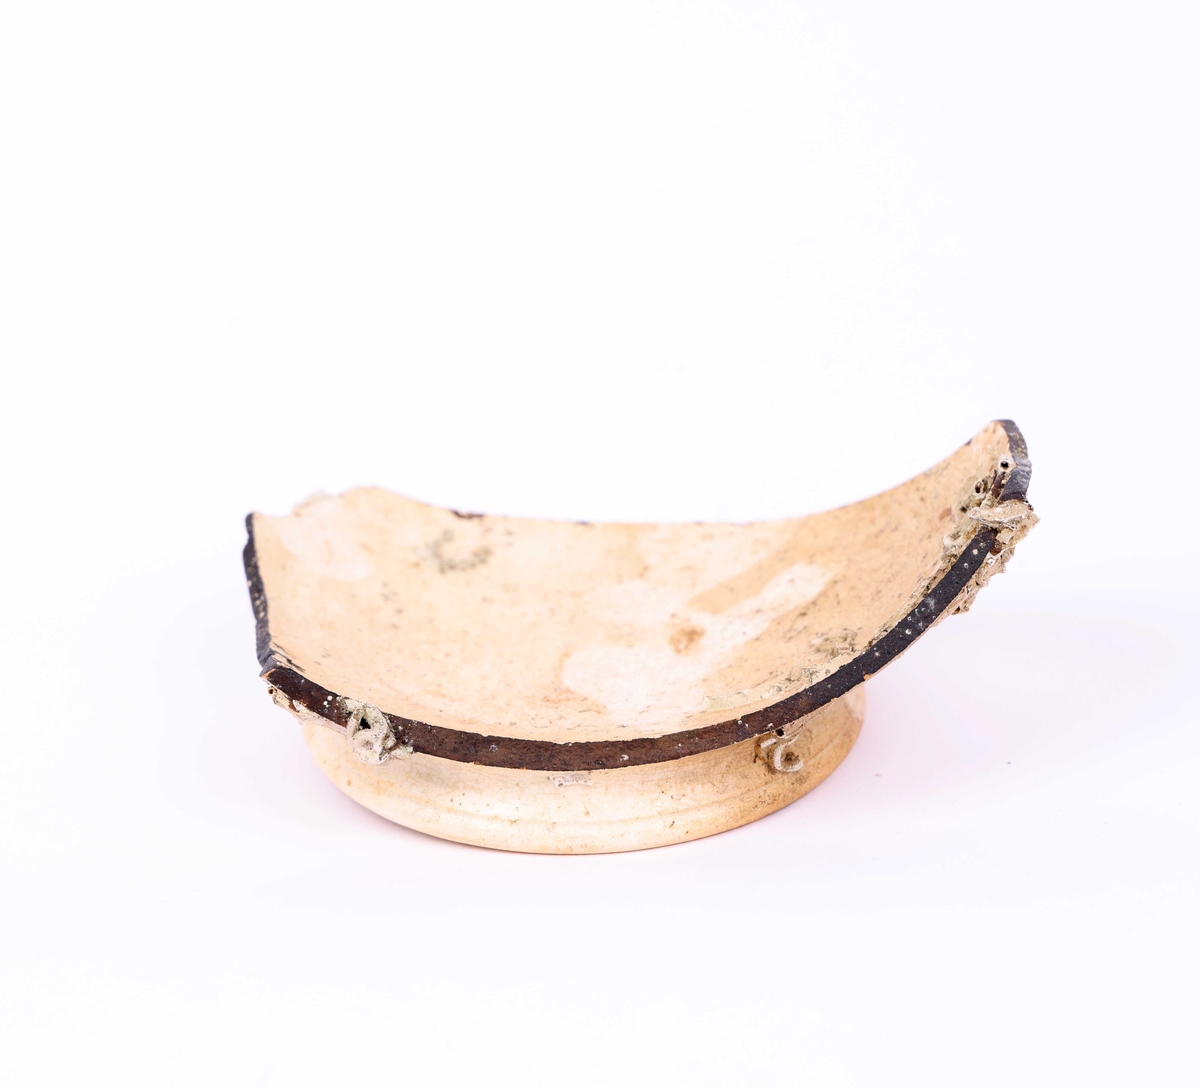 Bunnskår i keramikk, trolig fajanse eller porselen, funnet i Nautasundet, Øygarden kommune. Skåret har delvis avskallet hvit glasur.